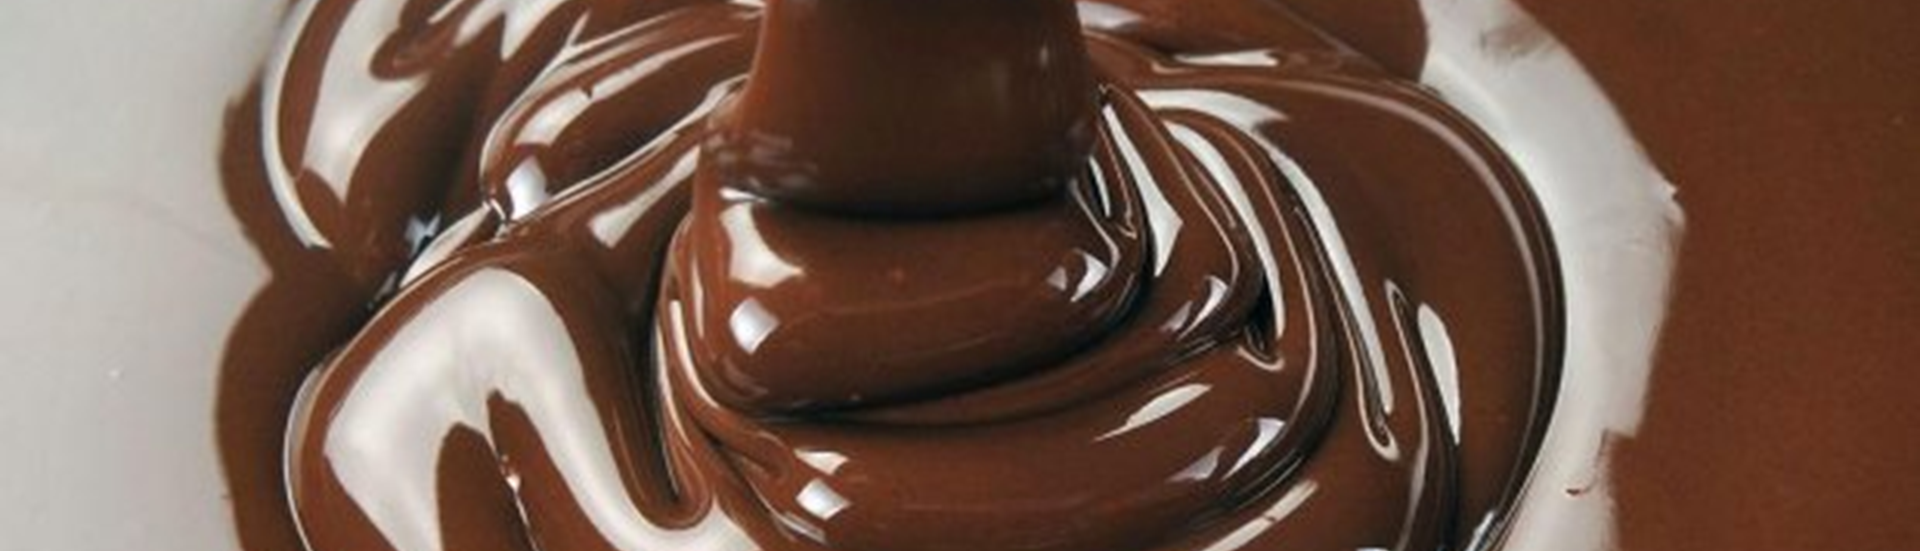 Topbillede med næroptagelse af flydende chokolade 